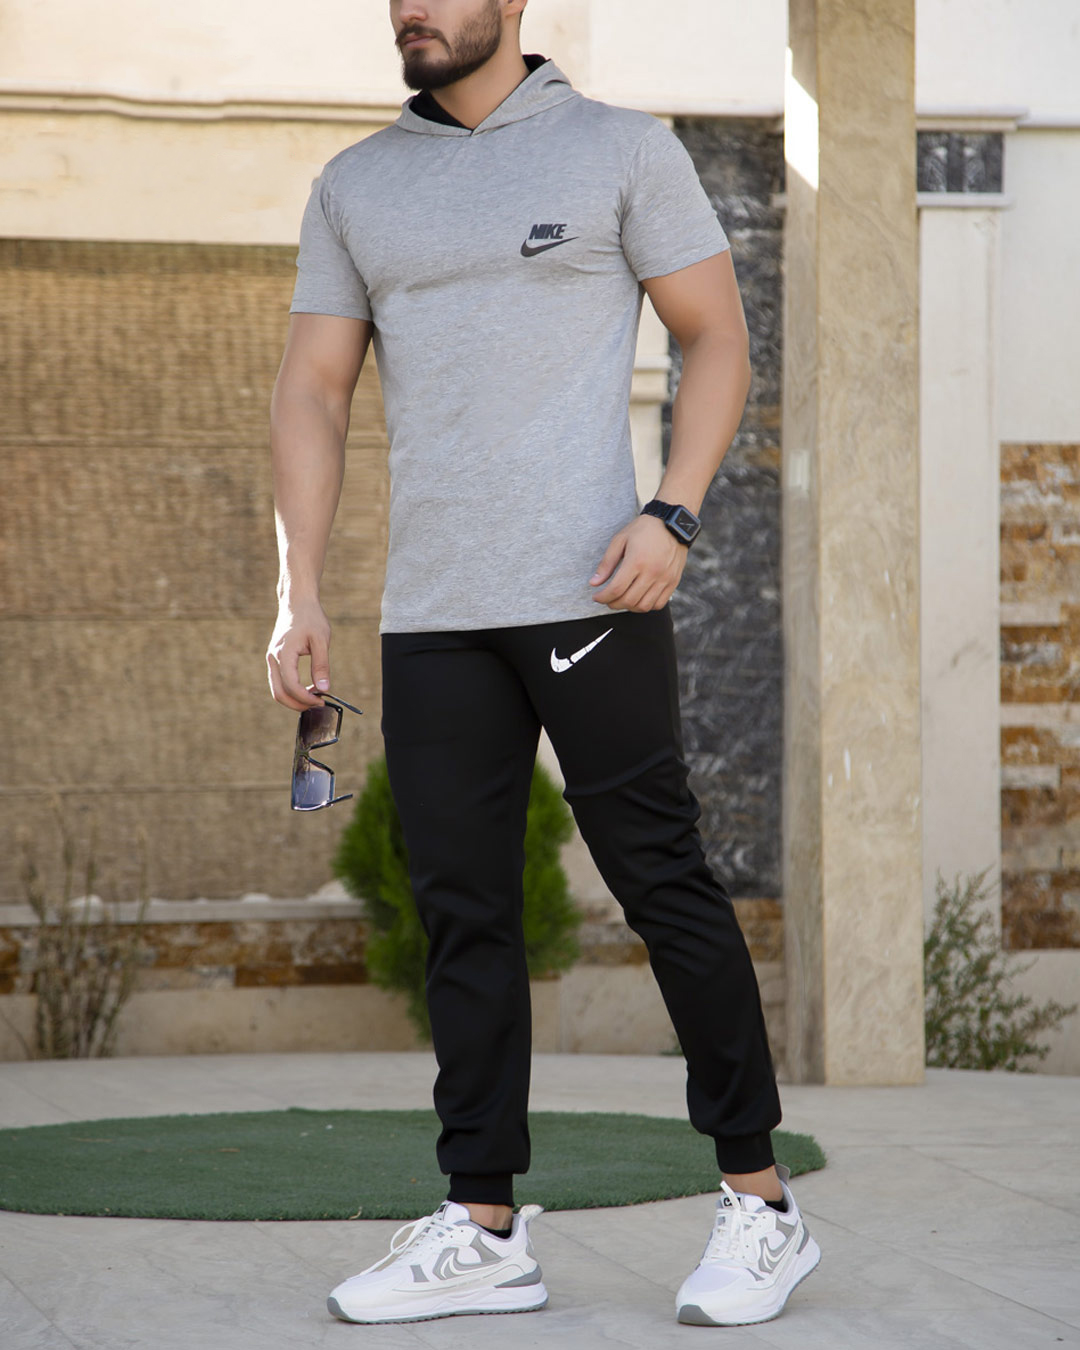 ست تیشرت شلوار مردانه Nike مدل OLES (طوسی)